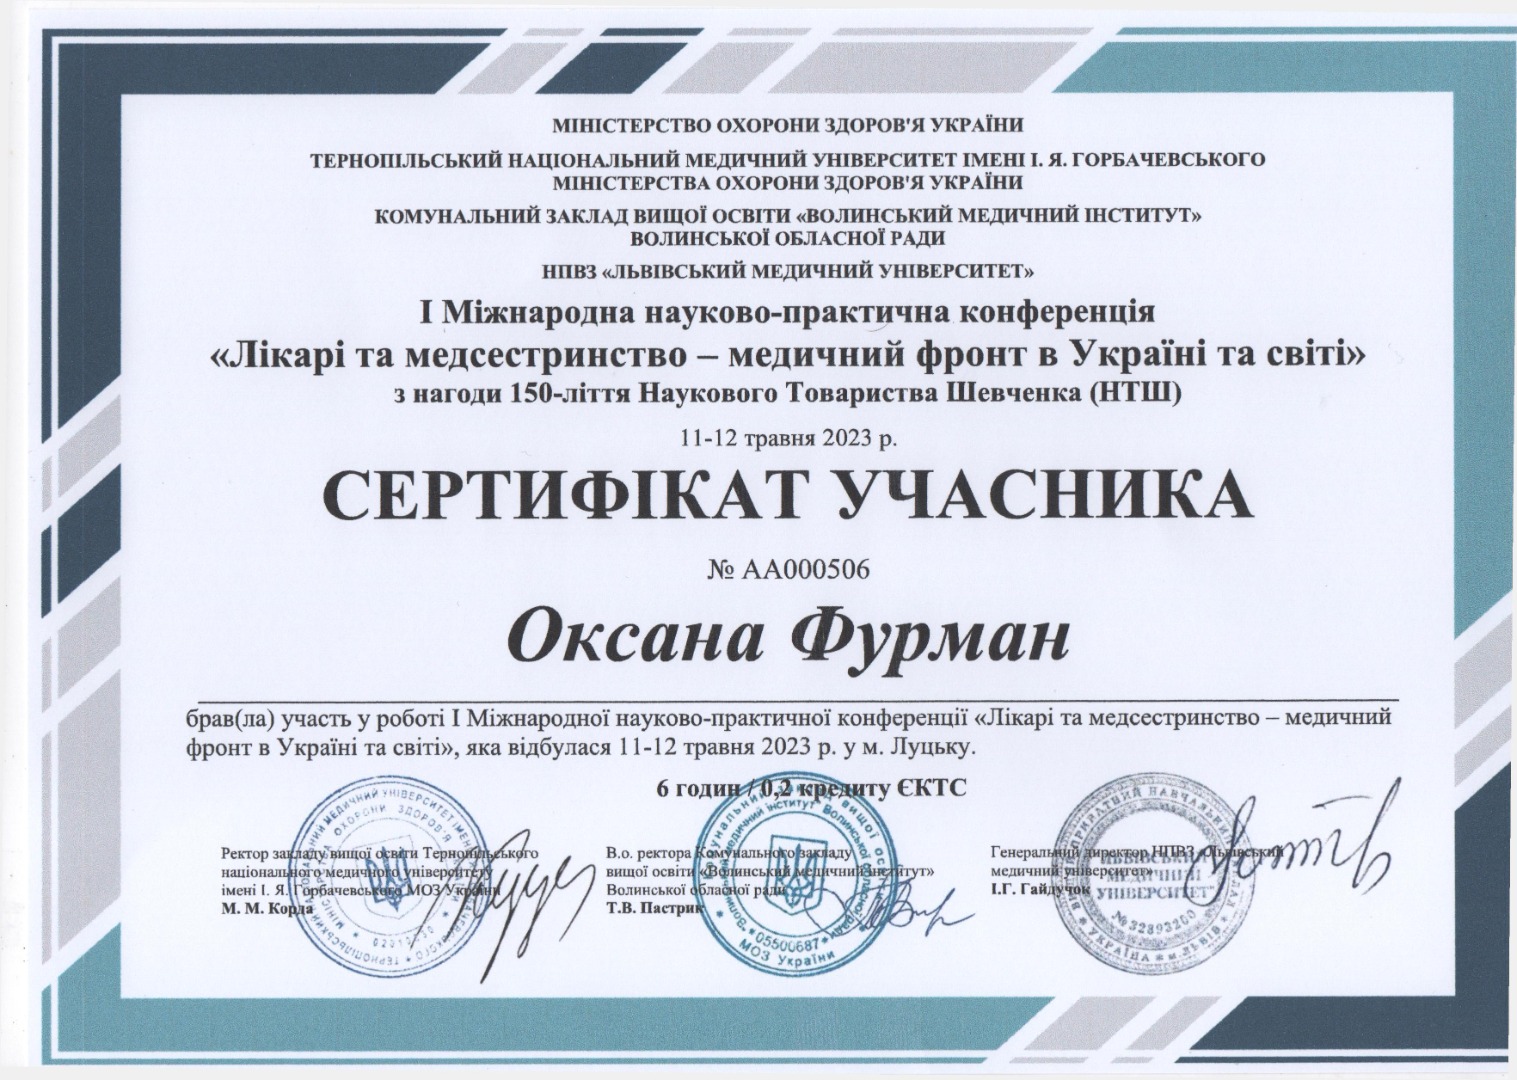 Сертифікат участі у науково-практичній конференції